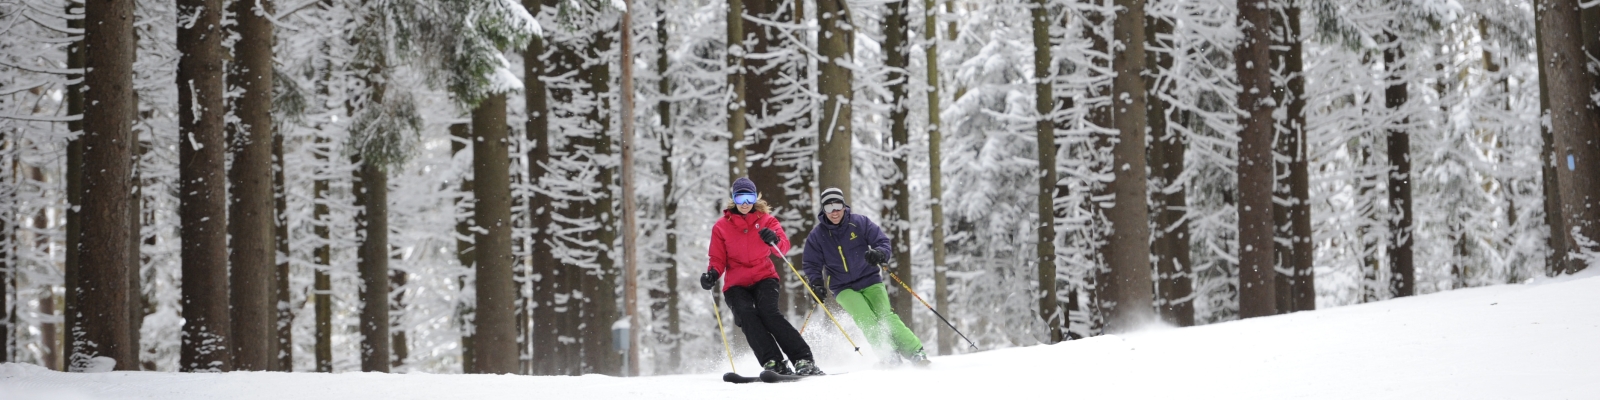 Skiing at Holiday Valley Resort